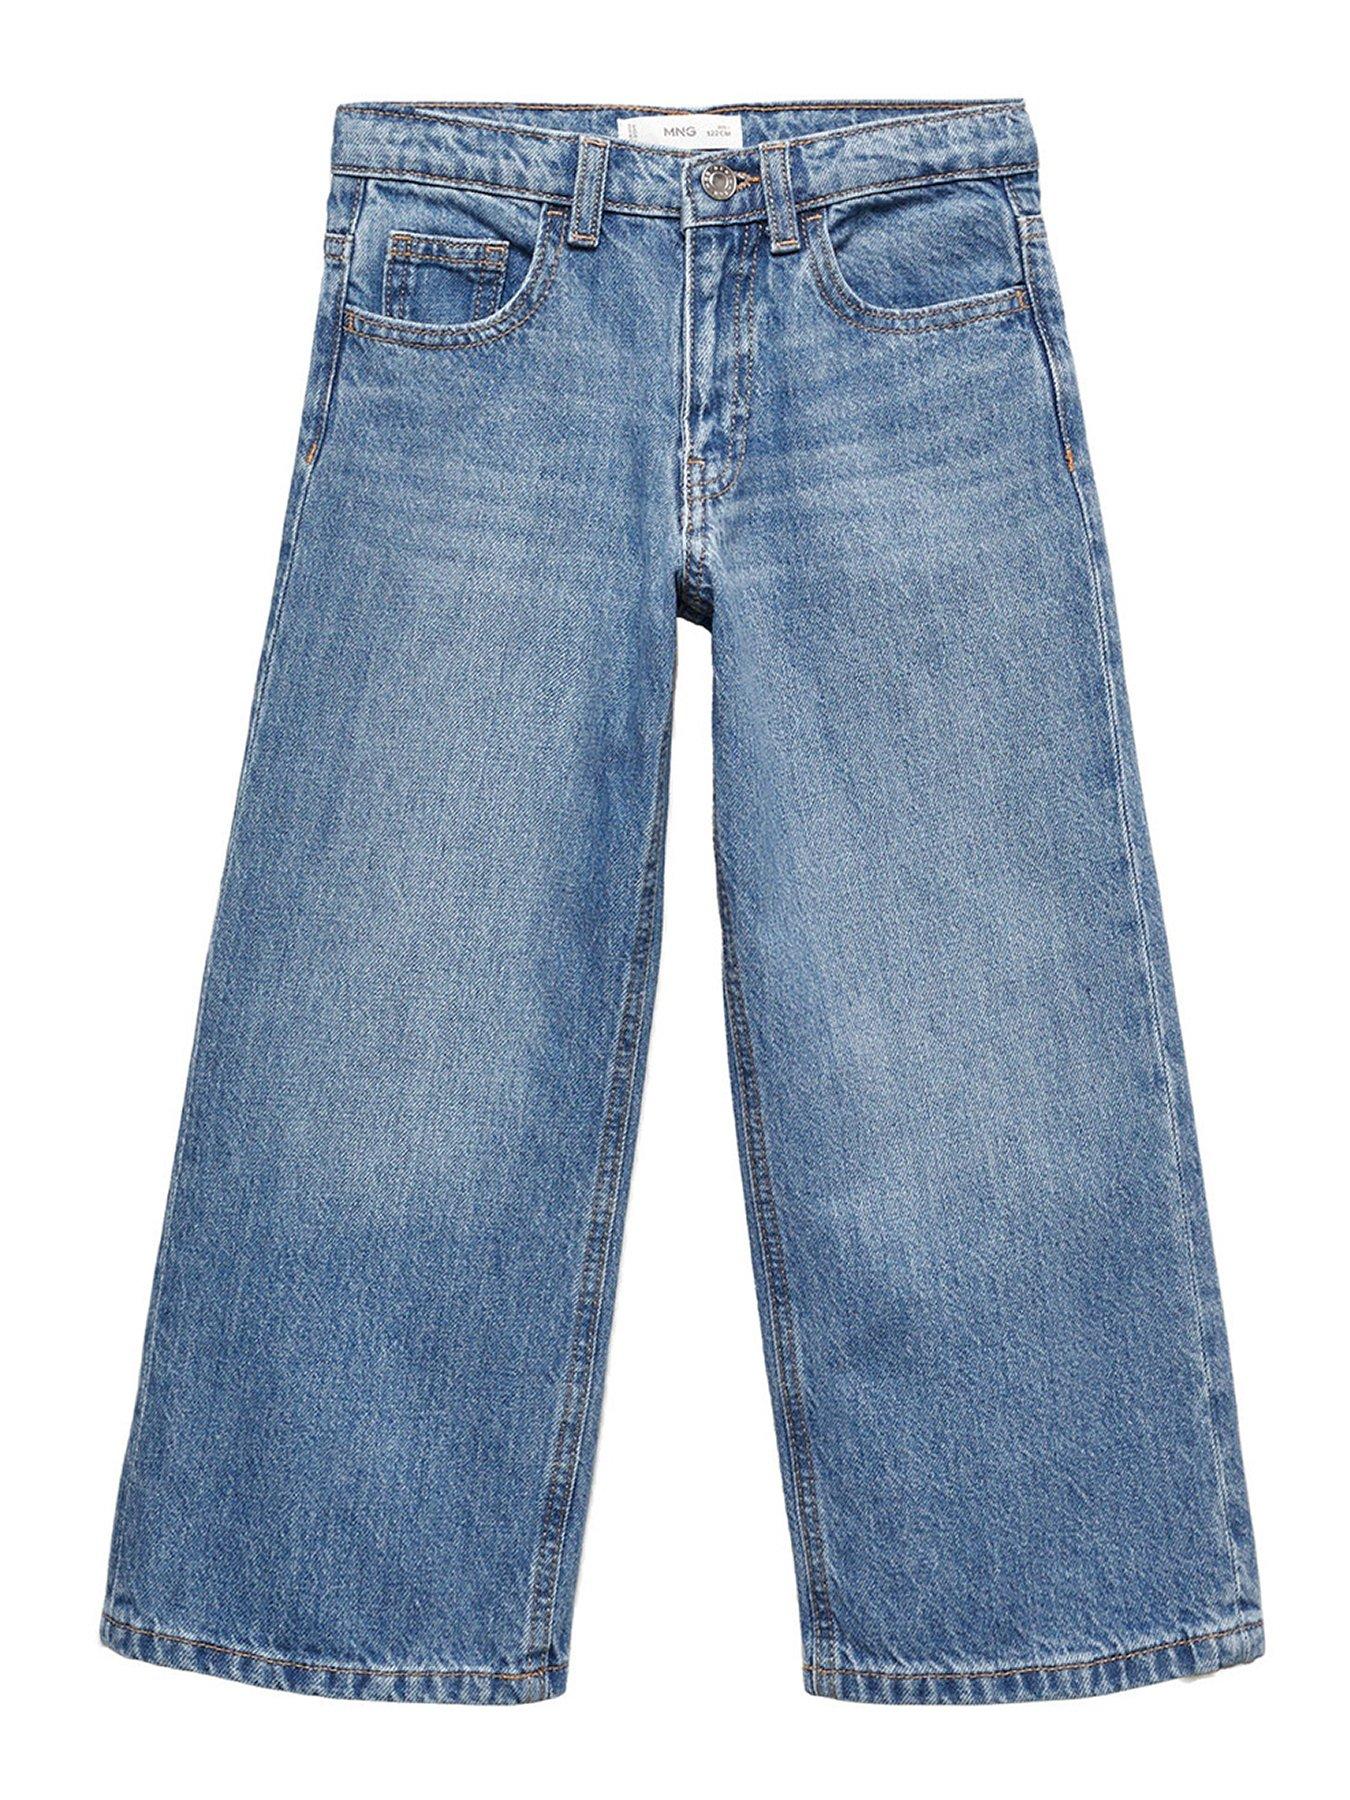 Girl's wide-leg short blue jeans